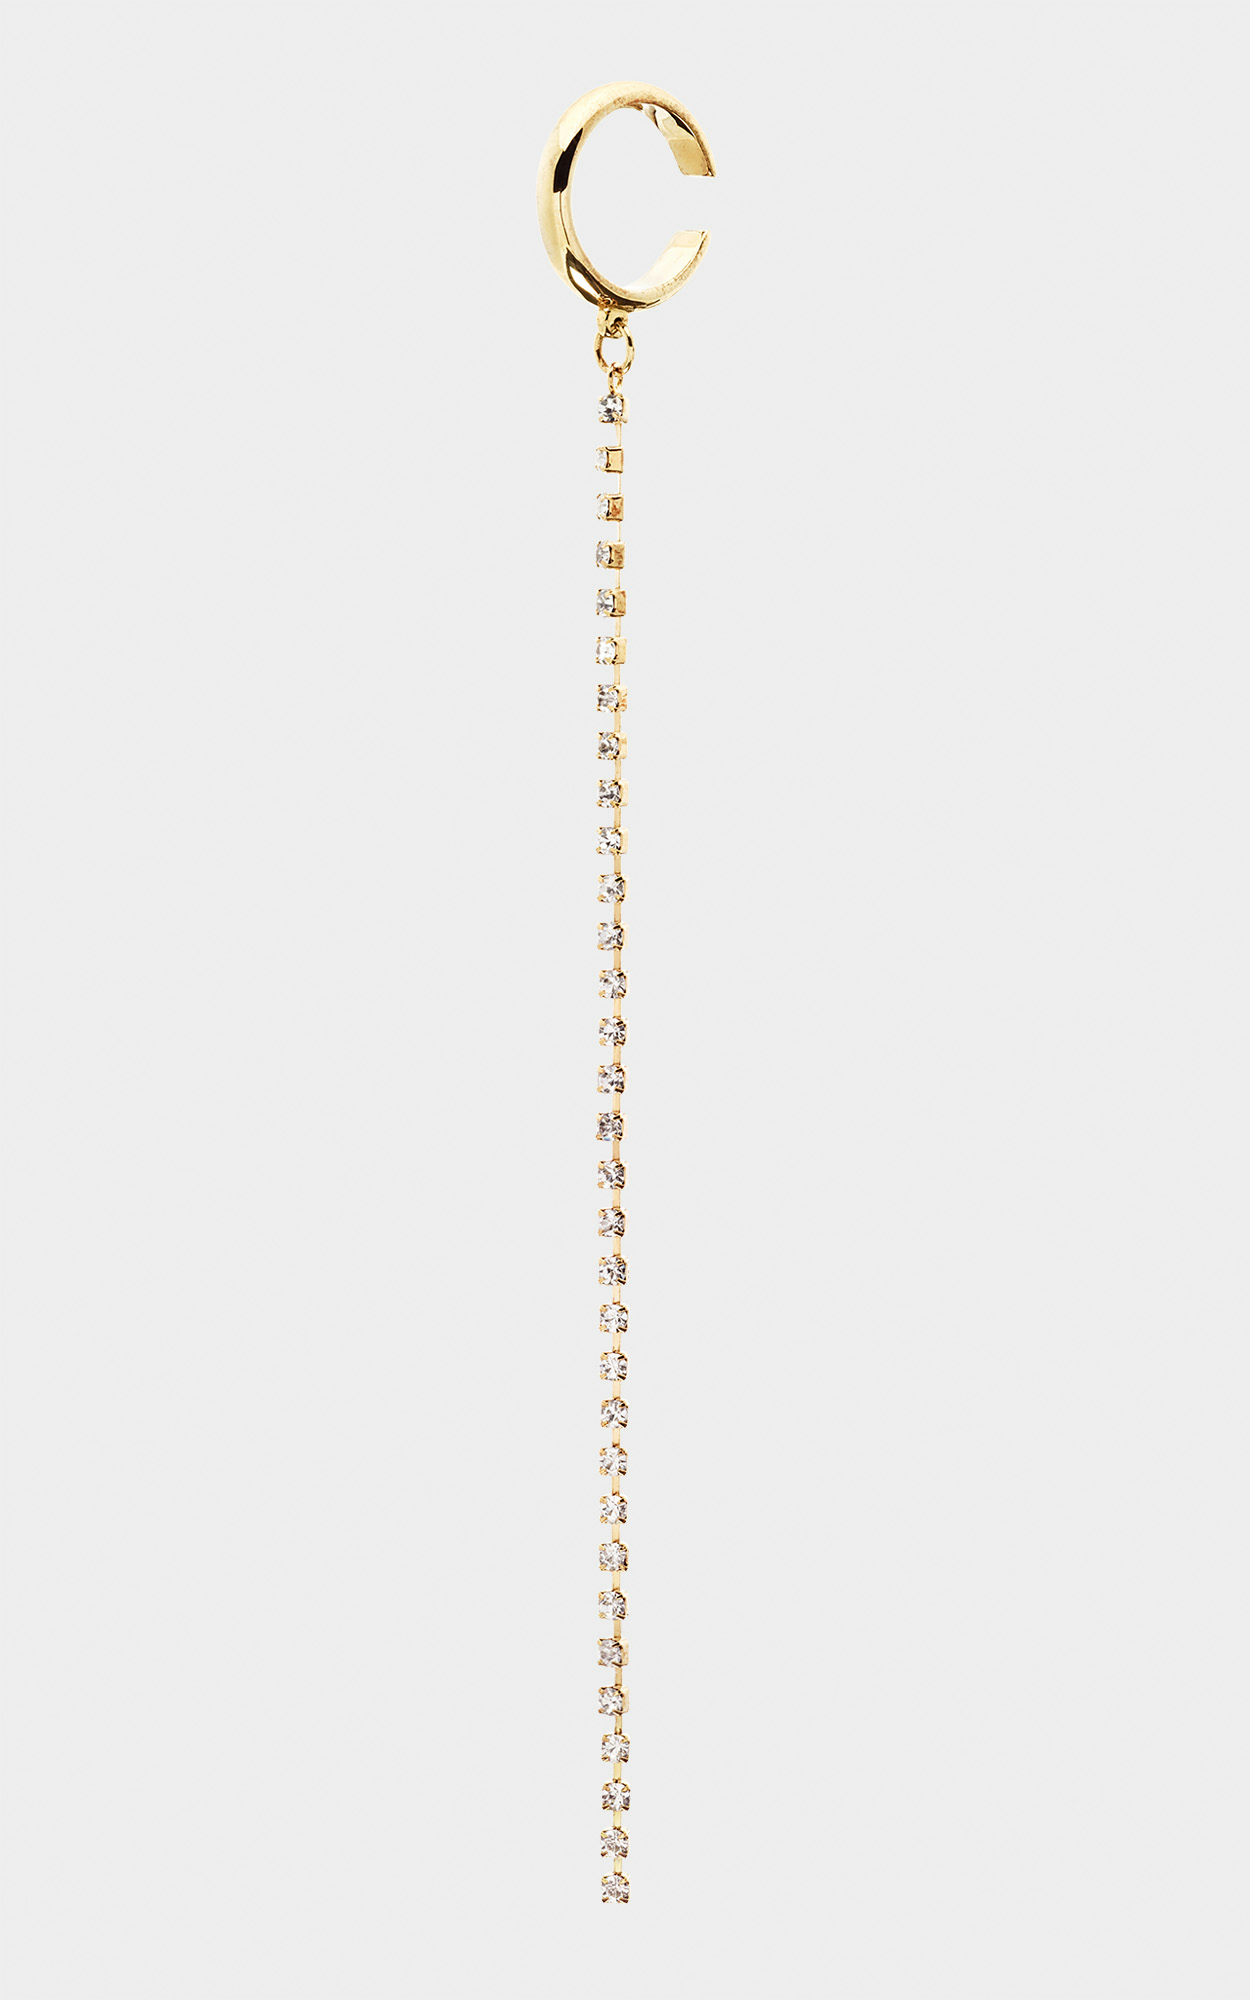 Lala Berlin - Goldener Ohrring mit Swarovski Steinen